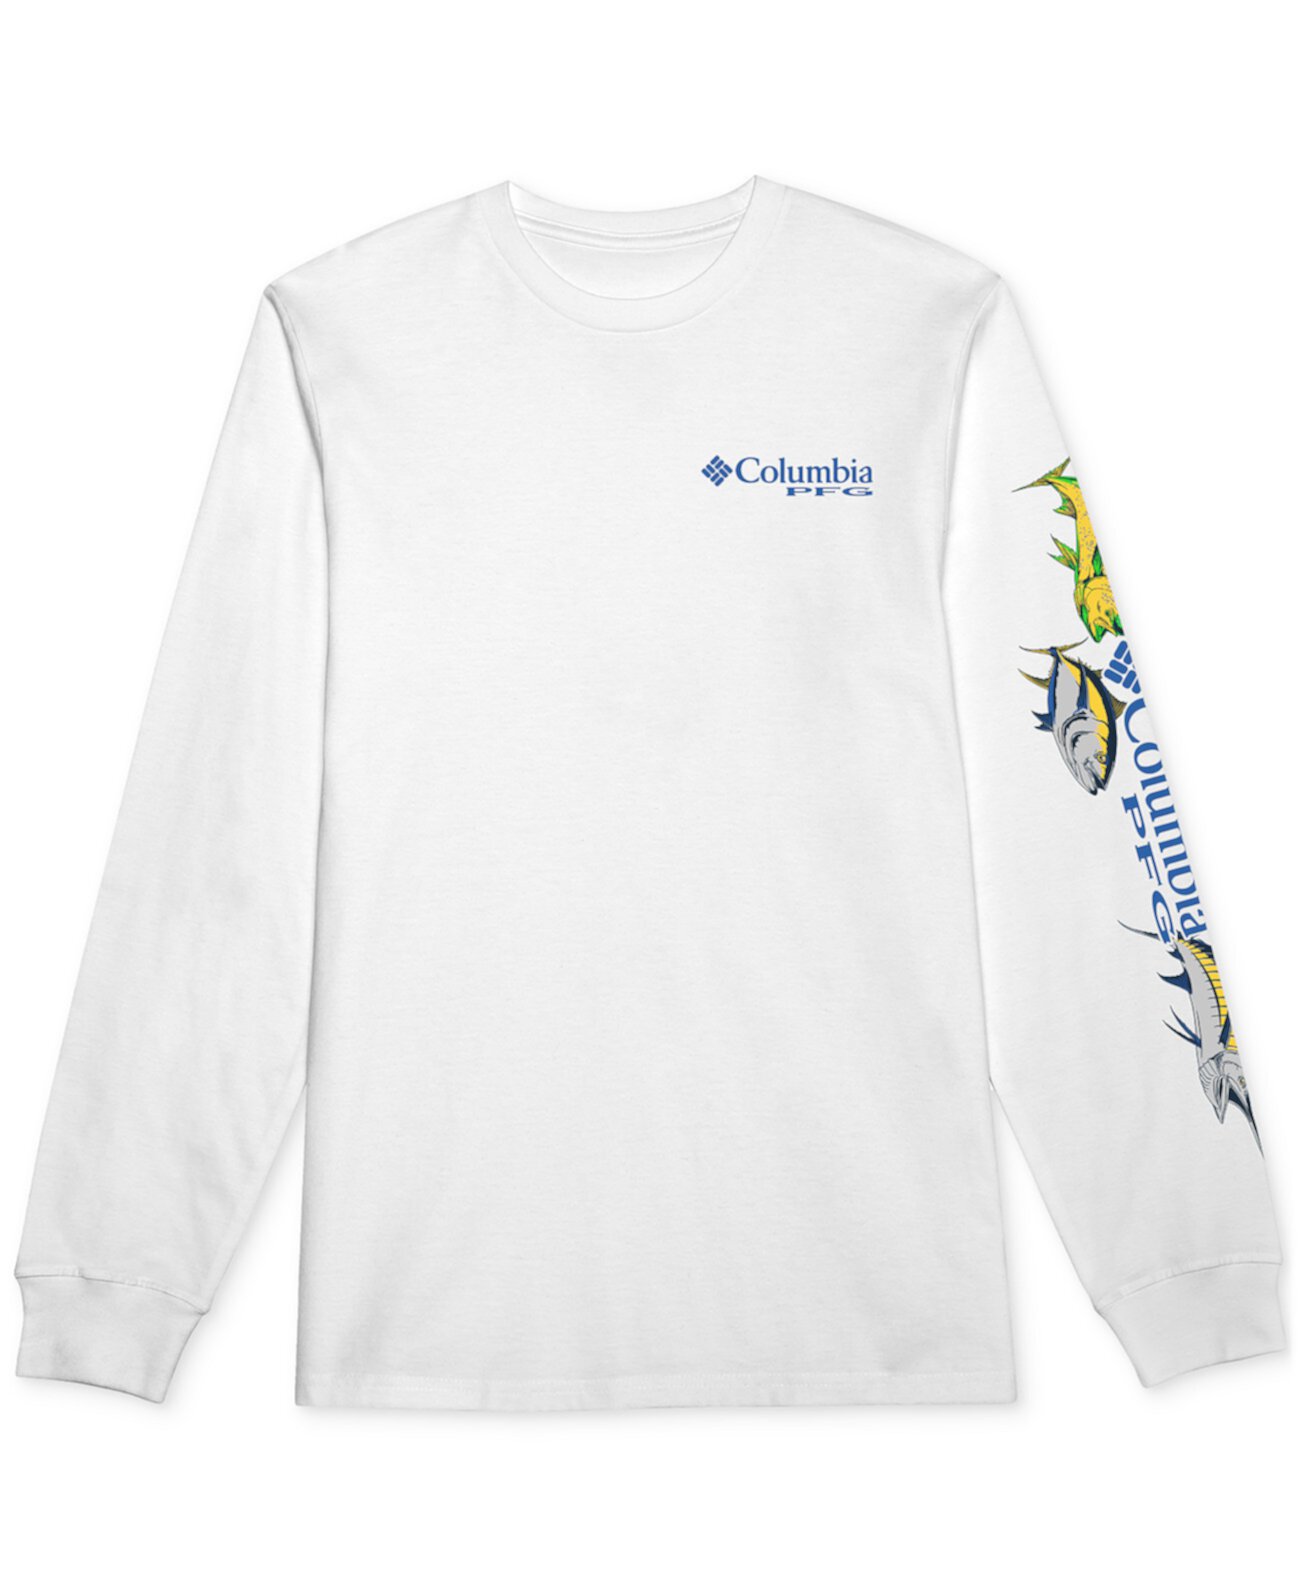 Мужская футболка с длинными рукавами и графикой для рыболовных снастей Riders Columbia